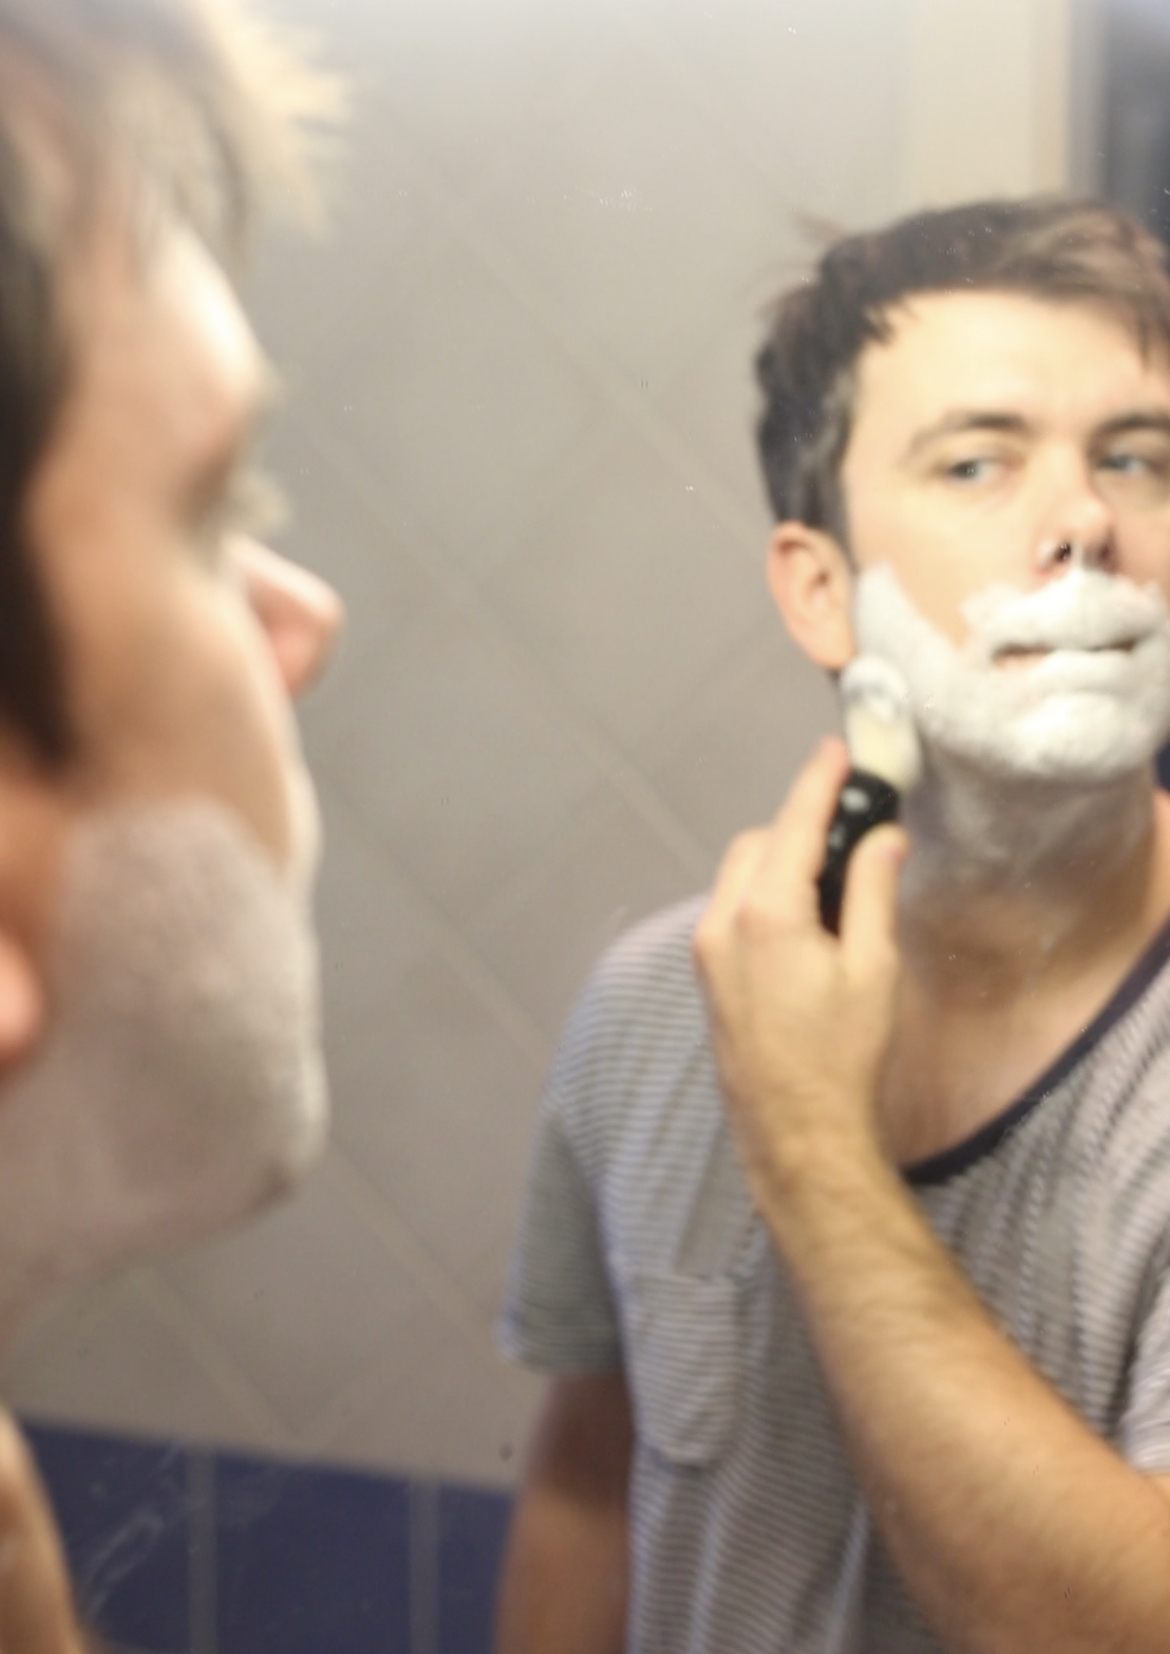 Art of shaving